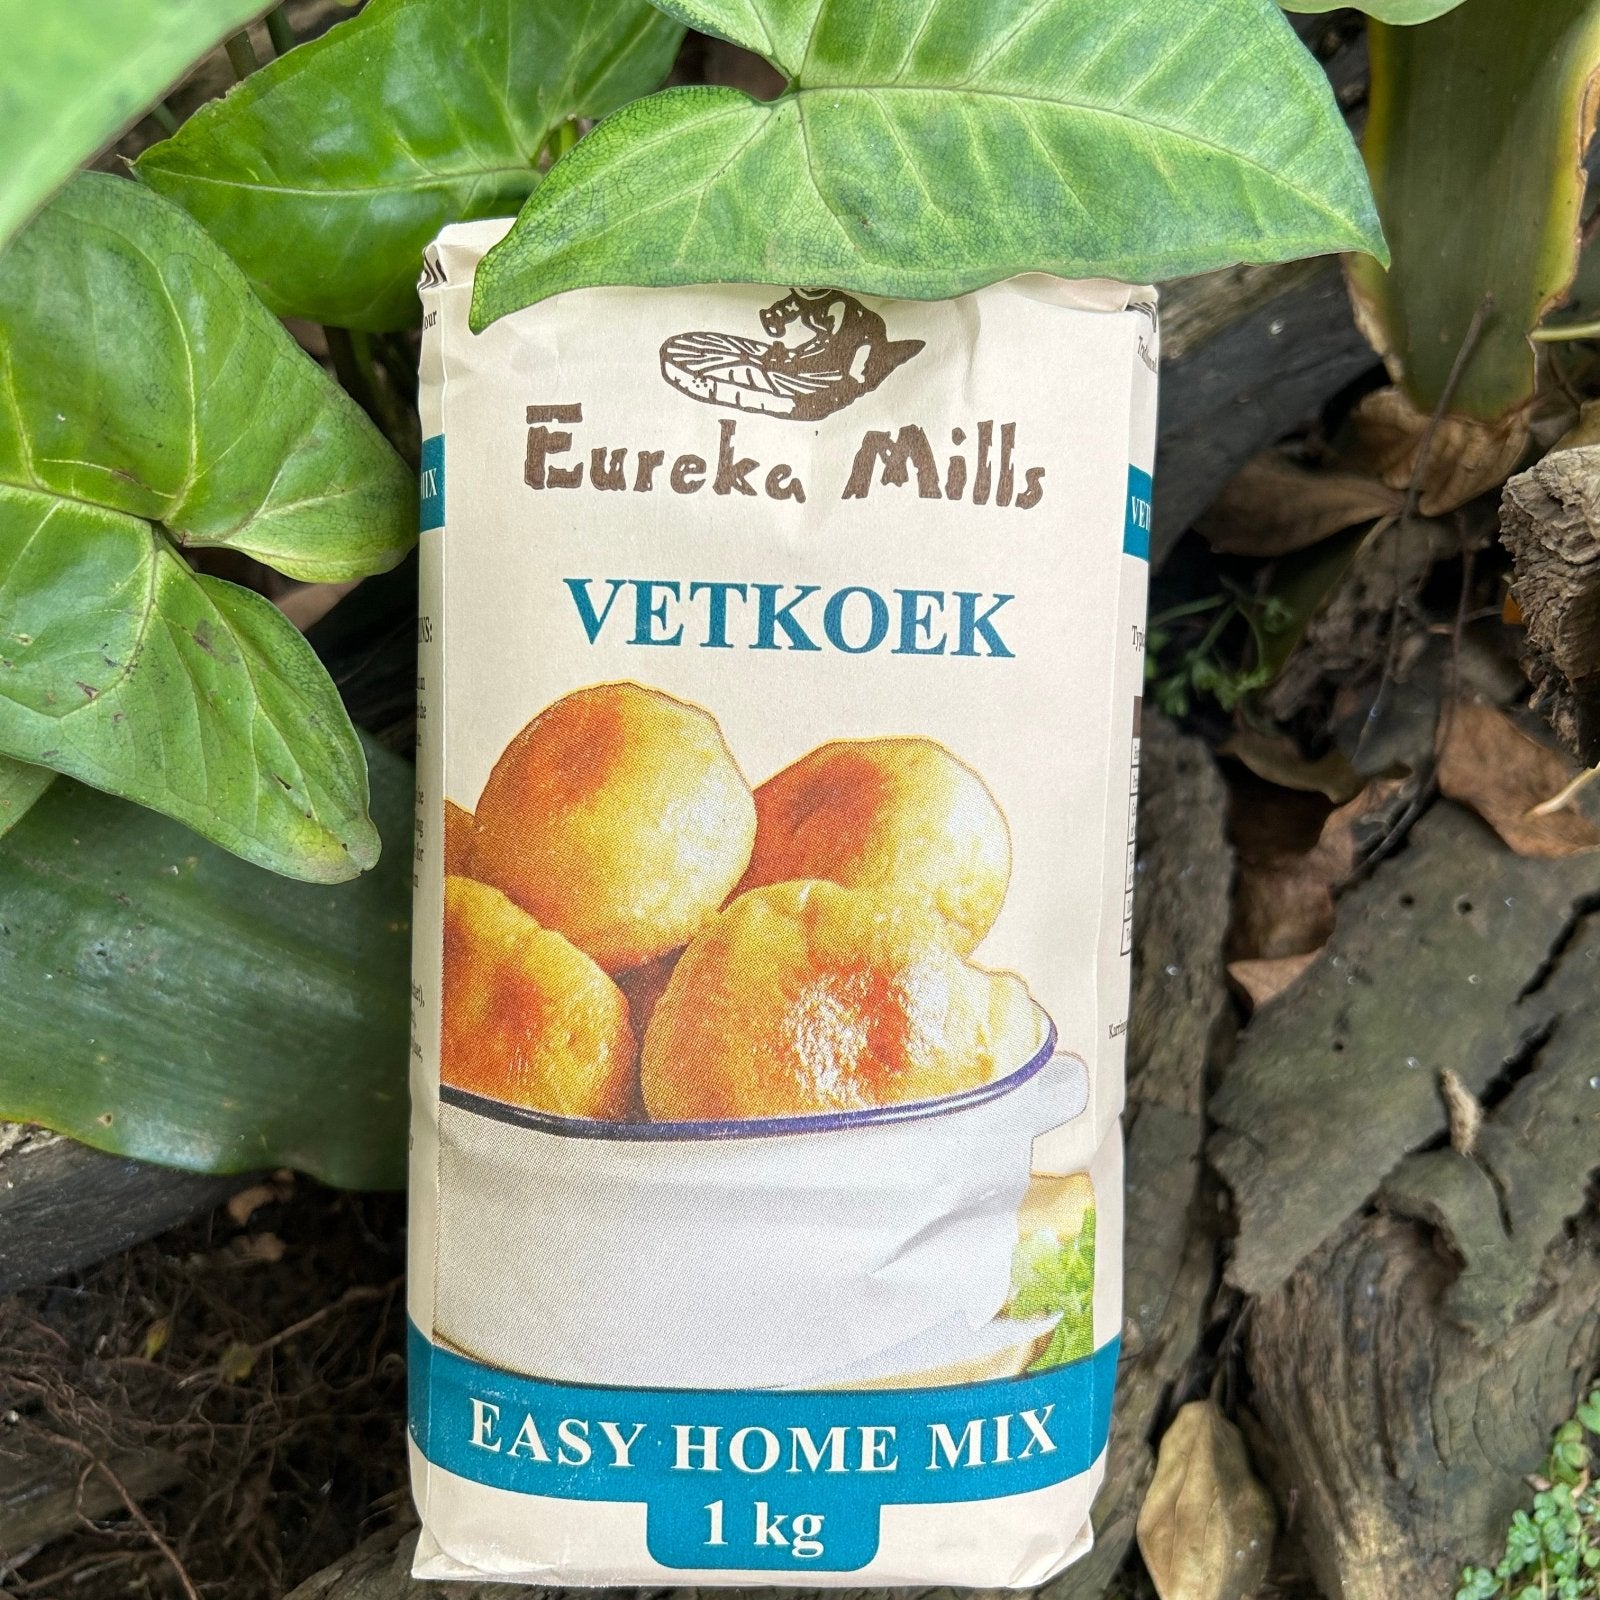 Eureka Mills Vetkoek Easy Home Mix (1kg) - The Deli